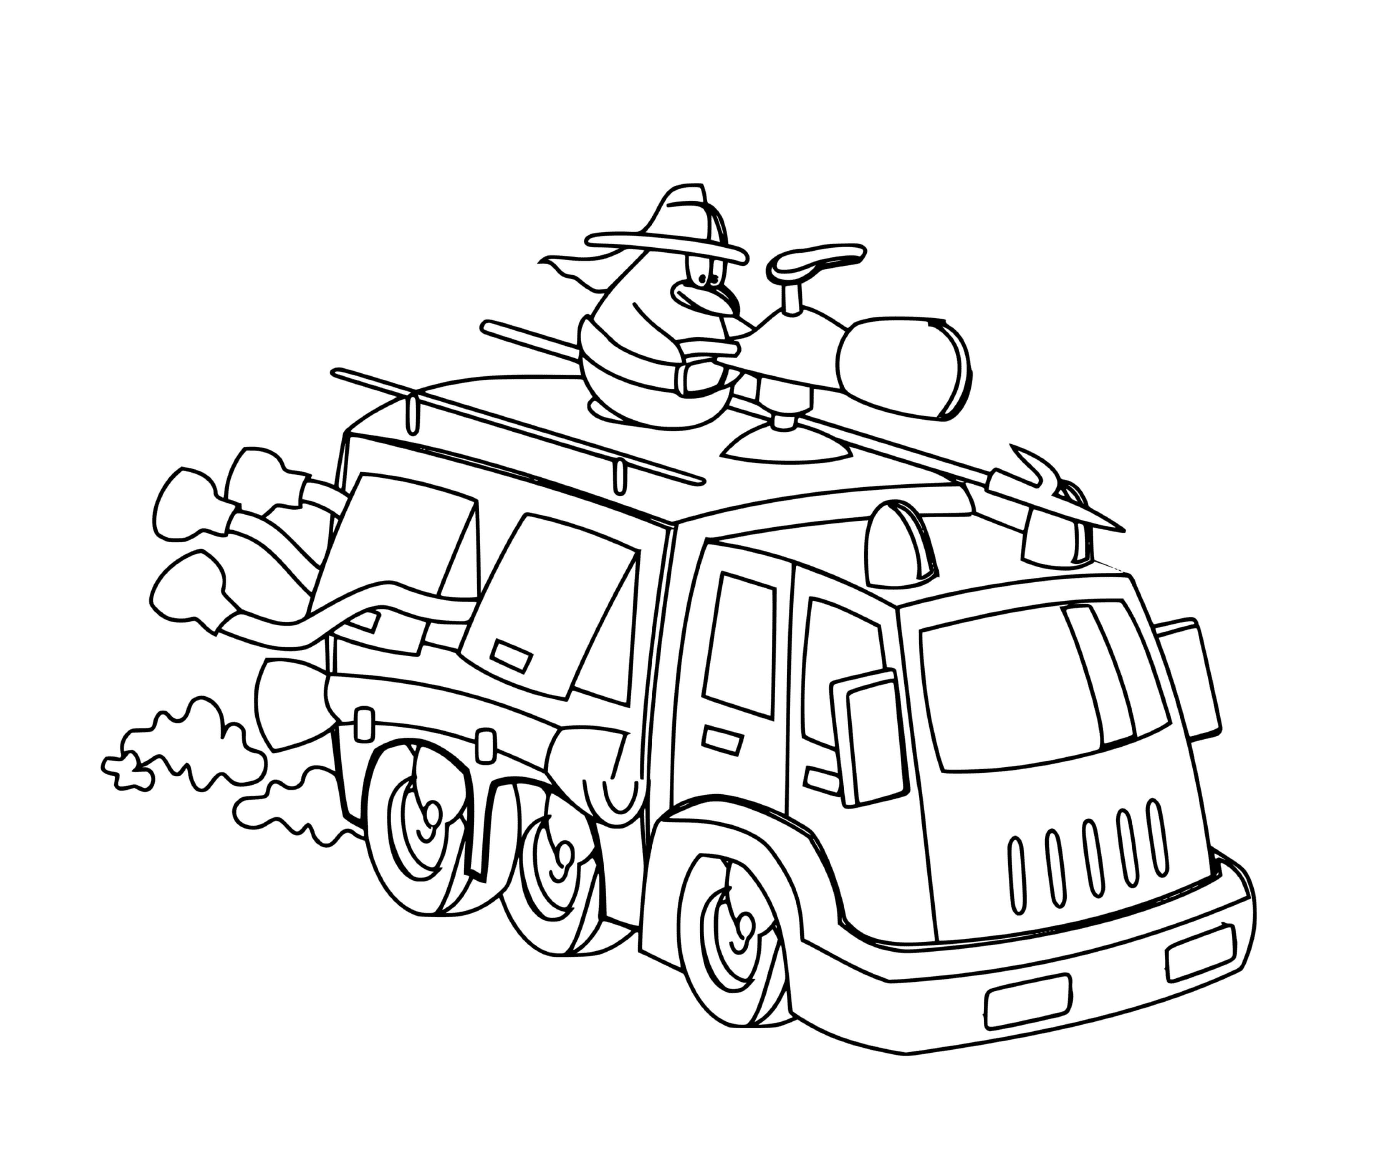 un dessin anime sur un camion de pompier a pleine vitesse